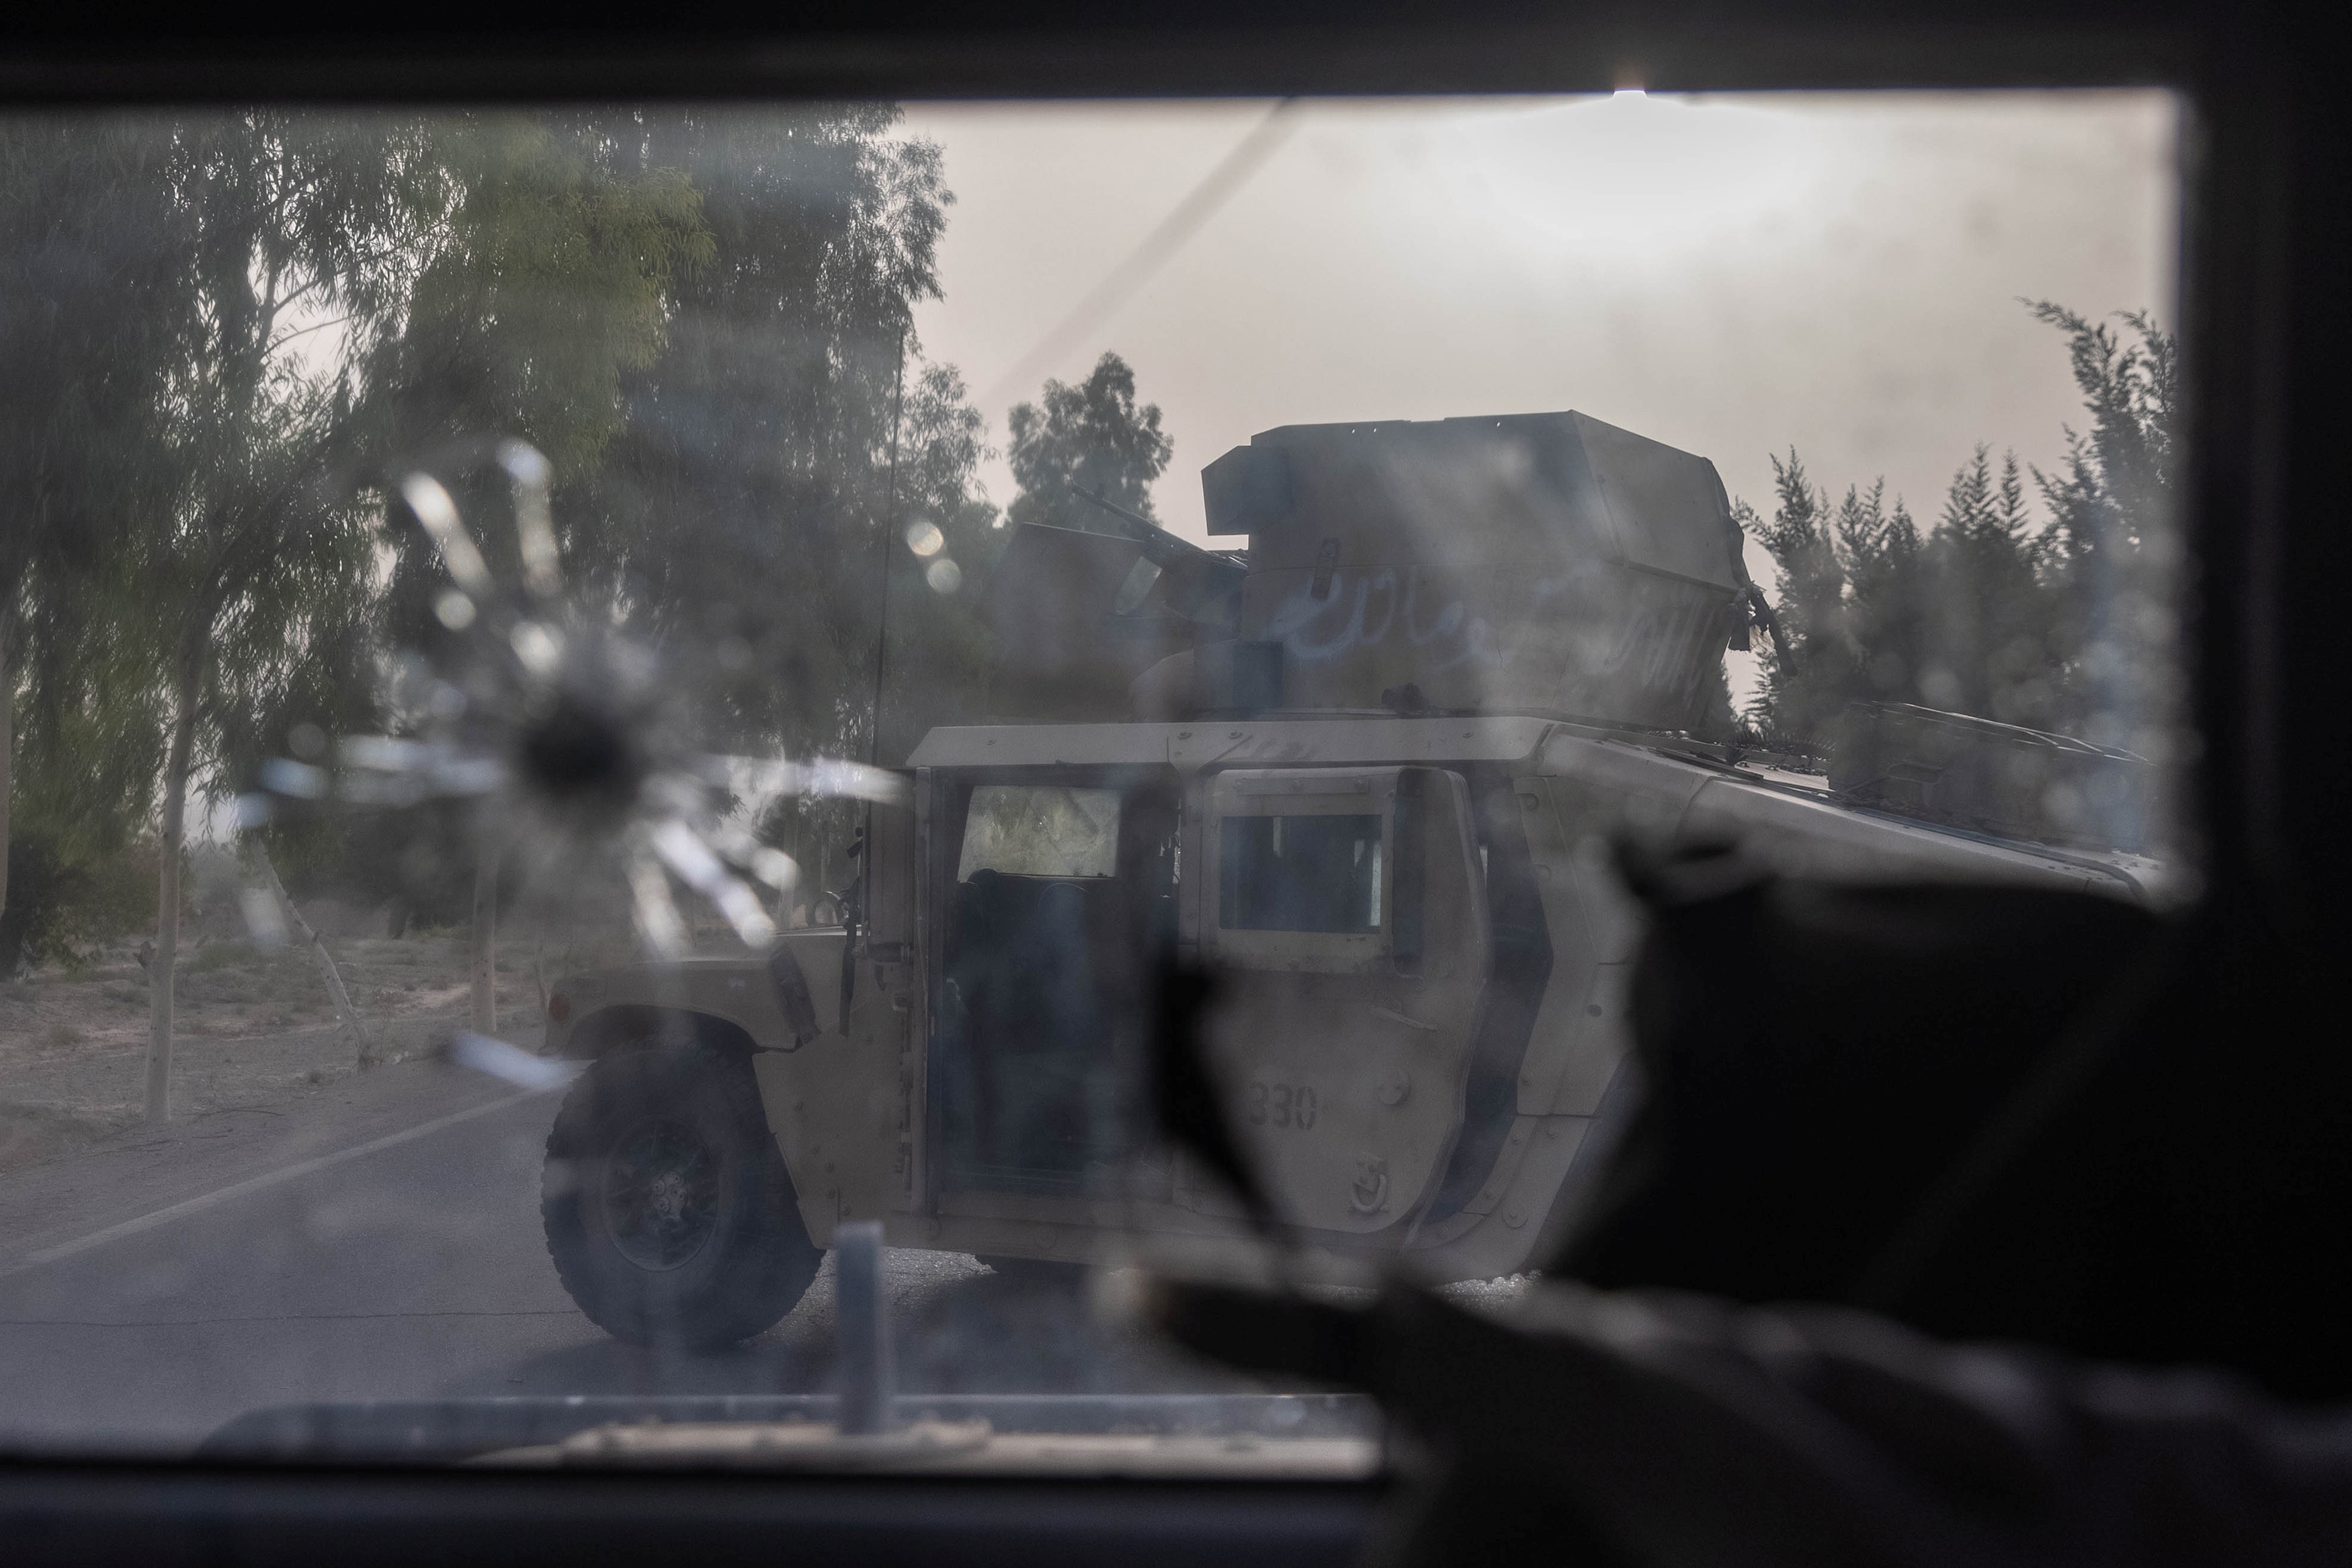 Un humvee de las fuerzas especiales afganas se ve destruido durante los fuertes enfrentamientos con los talibanes durante la misión de rescate de un oficial de policía asediado en un puesto de control, en la provincia de Kandahar, Afganistán, el 13 de julio de 2021. 